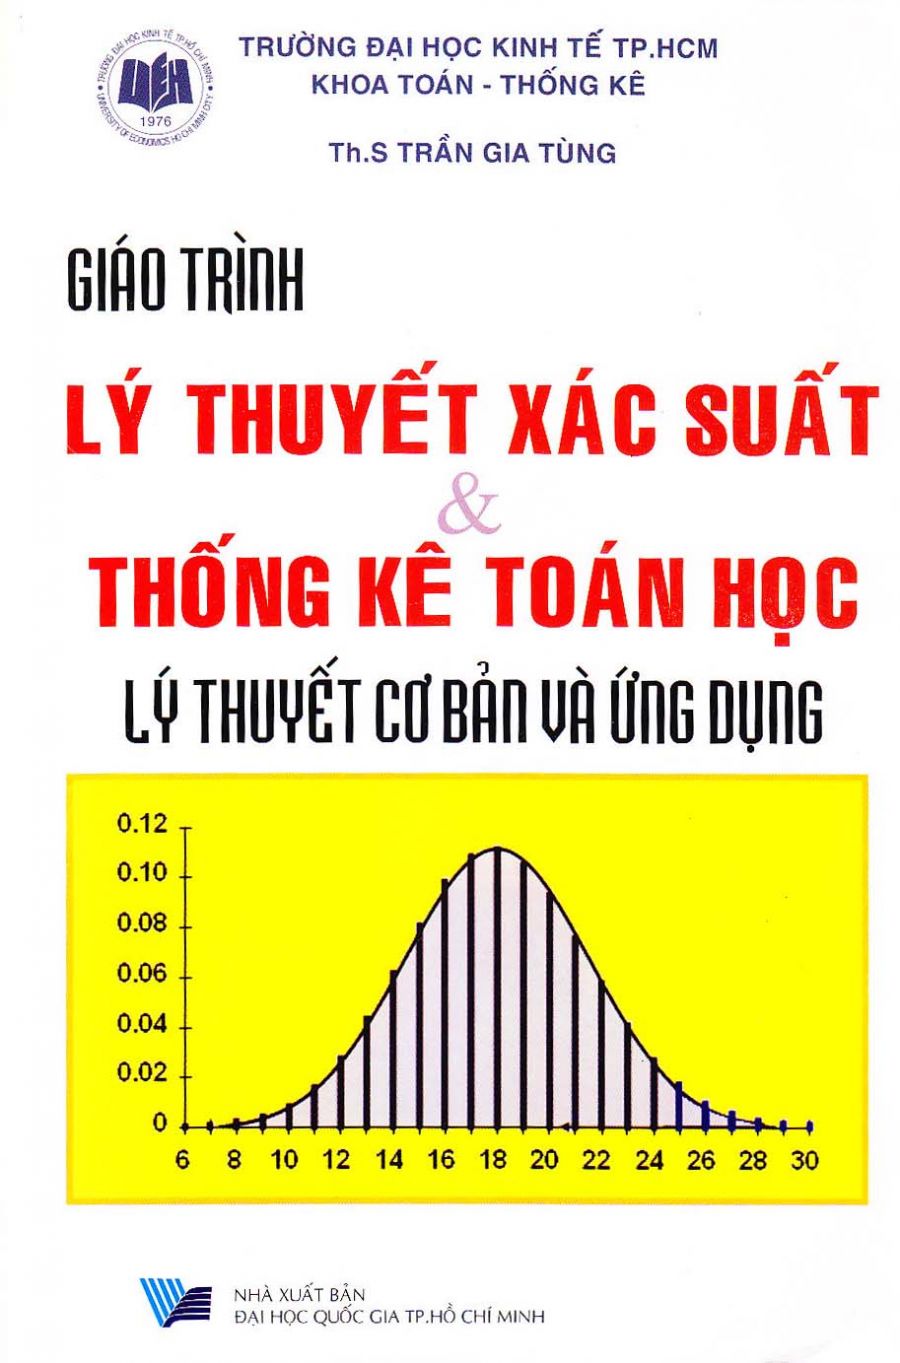 Giáo trình lý thuyết xác suất & thống kê toán học – Lý thuyết cơ bản và ứng dụng